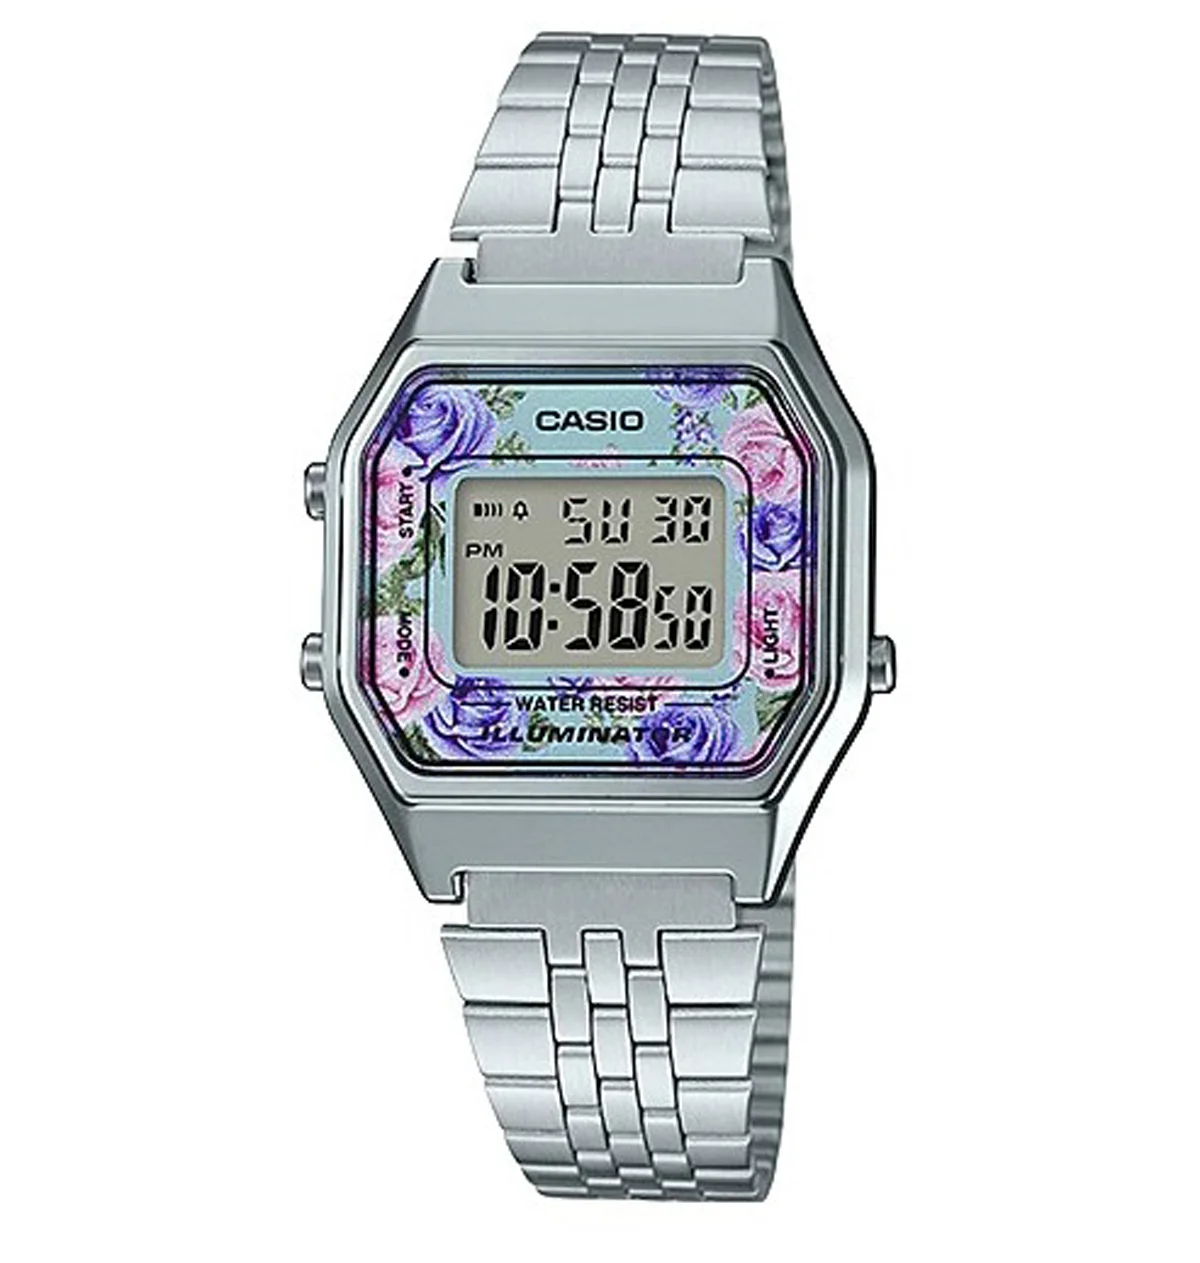 casio pac-man collaboration vintage timepiece watch teaser